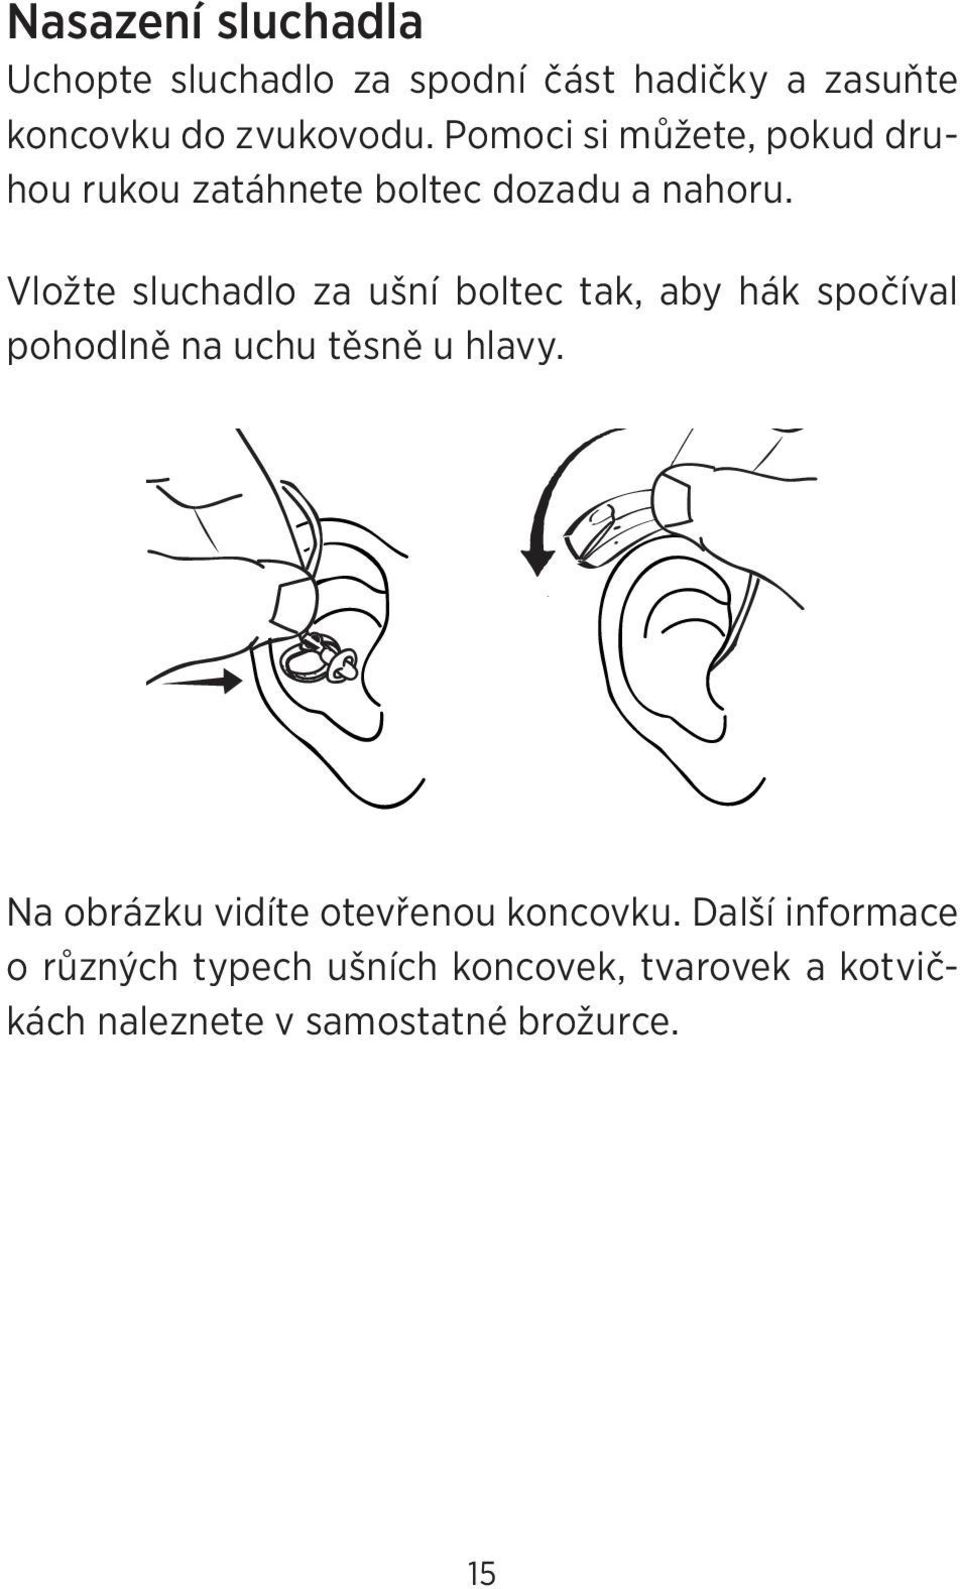 Vložte sluchadlo za ušní boltec tak, aby hák spočíval pohodlně na uchu těsně u hlavy.